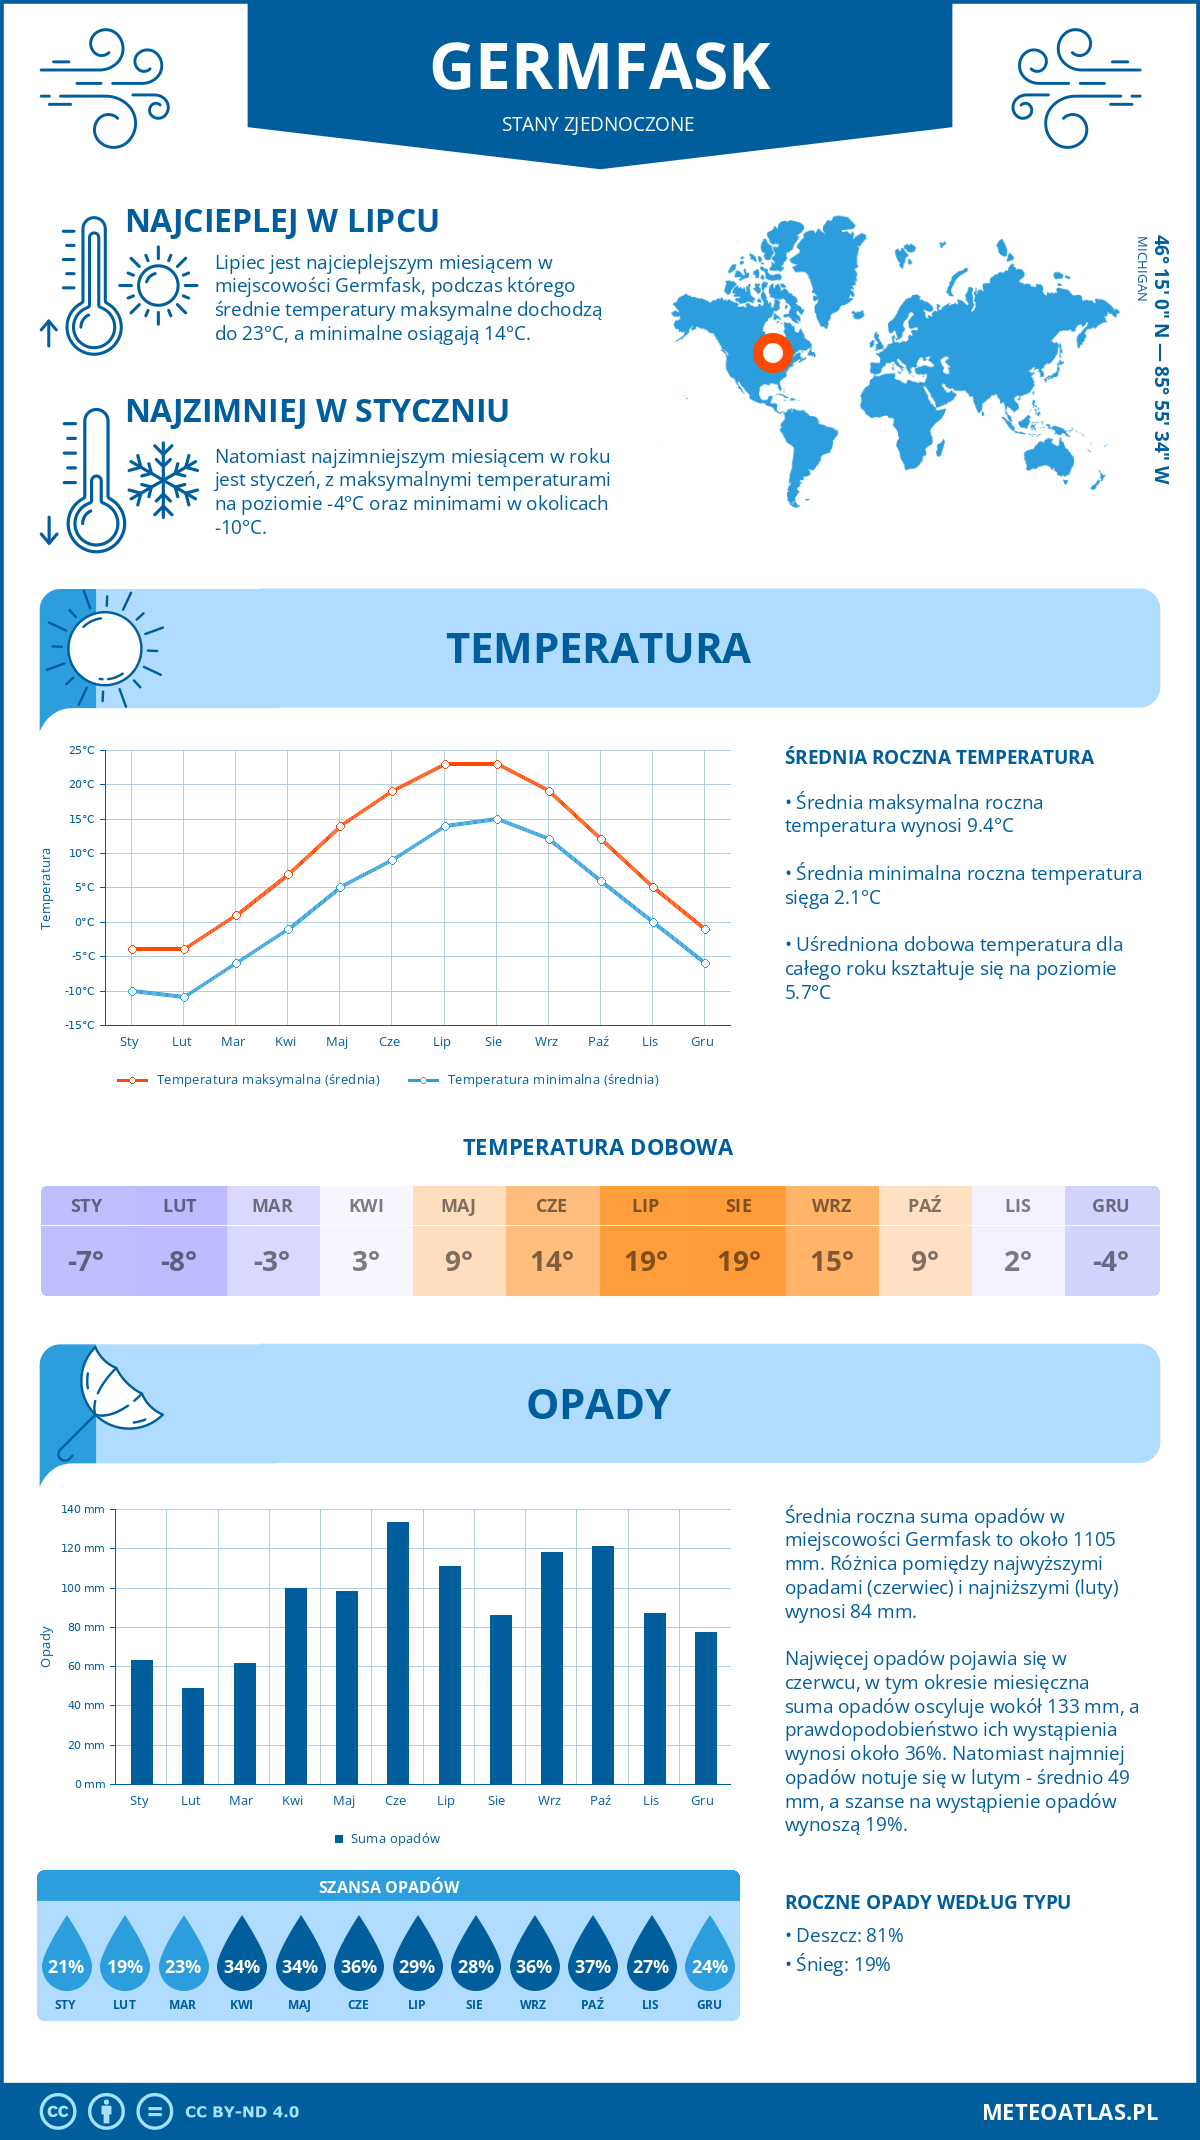 Pogoda Germfask (Stany Zjednoczone). Temperatura oraz opady.